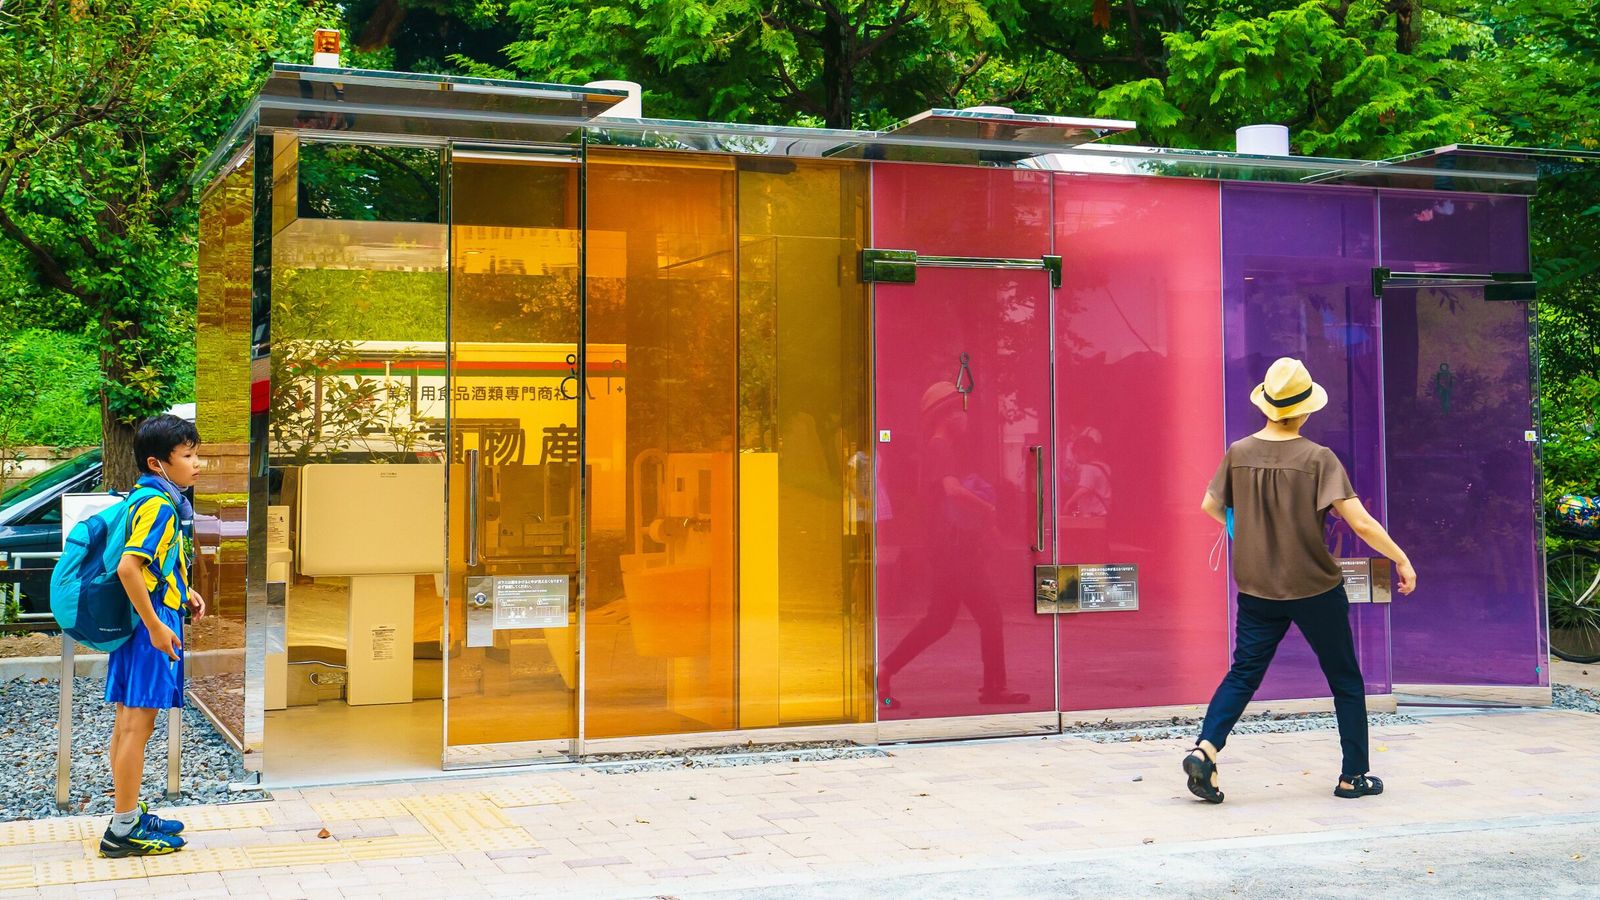 Ιαπωνία: Διάφανες δημόσιες τουαλέτες άνοιξαν σε πάρκα του Τόκιο!